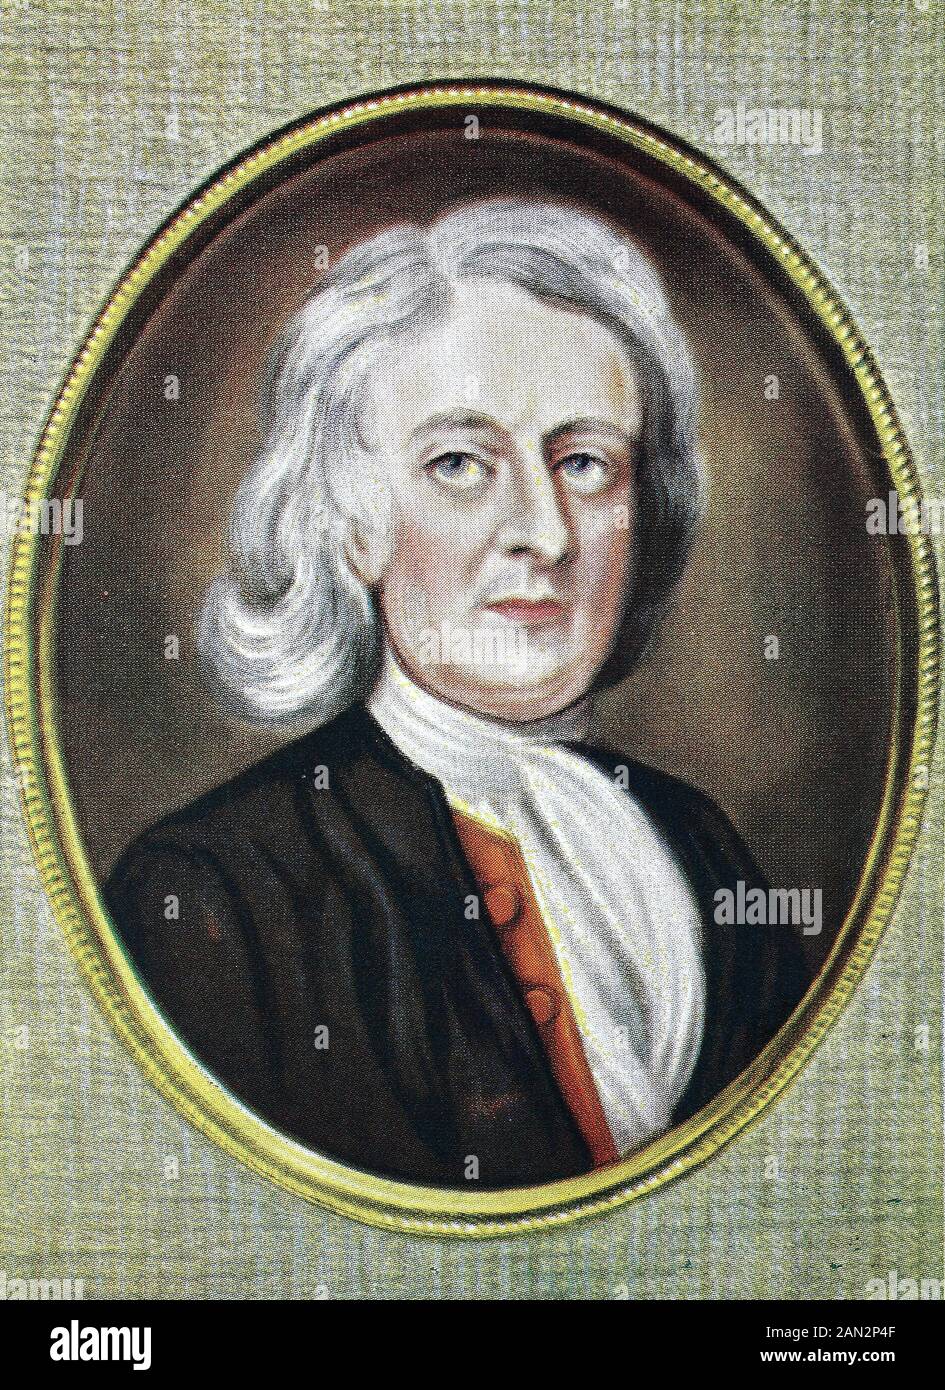 Sir Isaac Newton, 25. Dezember 1642 - 20. März 1726/27, war ein englischer Mathematikhistoriker, Astronom, Theologe, Autor und Physiker, der in seinem eigenen Tag als Naturphilologe beschrieben wurde, der weithin als einer der einflussreichsten Wissenschaftler aller Zeiten anerkannt ist. Und eine Schlüsselfigur in der wissenschaftlichen Revolution, / Sir Isaac Newton, 25. Dezember 1642 - 20. März 1726/27, war ein englischer Mathematiker, Astronom, Theologe, Autor und Physiker, der zu einer Zeit als Naturphilosophie bezeichnet wurde und allgemeine als einer der einblussreichsten Wissenstler überhaupt vergoldete Zeit und ein Schlüsselselbst Stockfoto